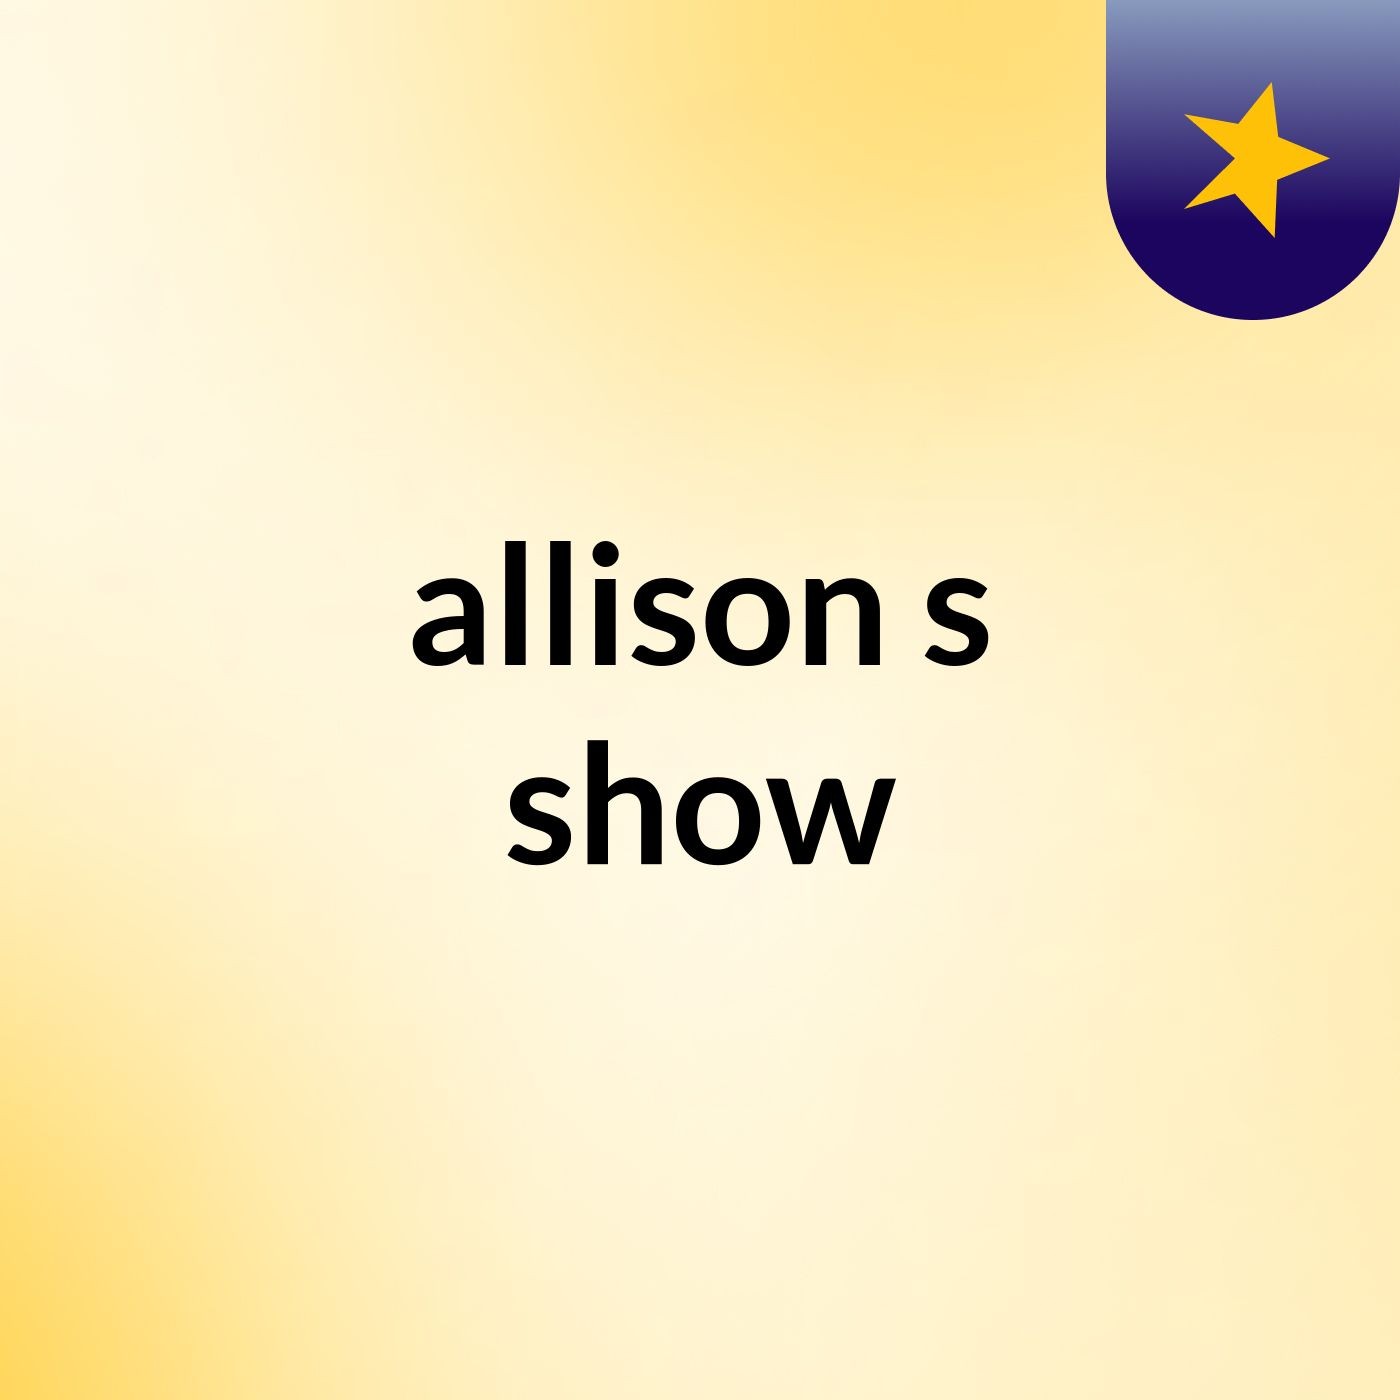 allison's show